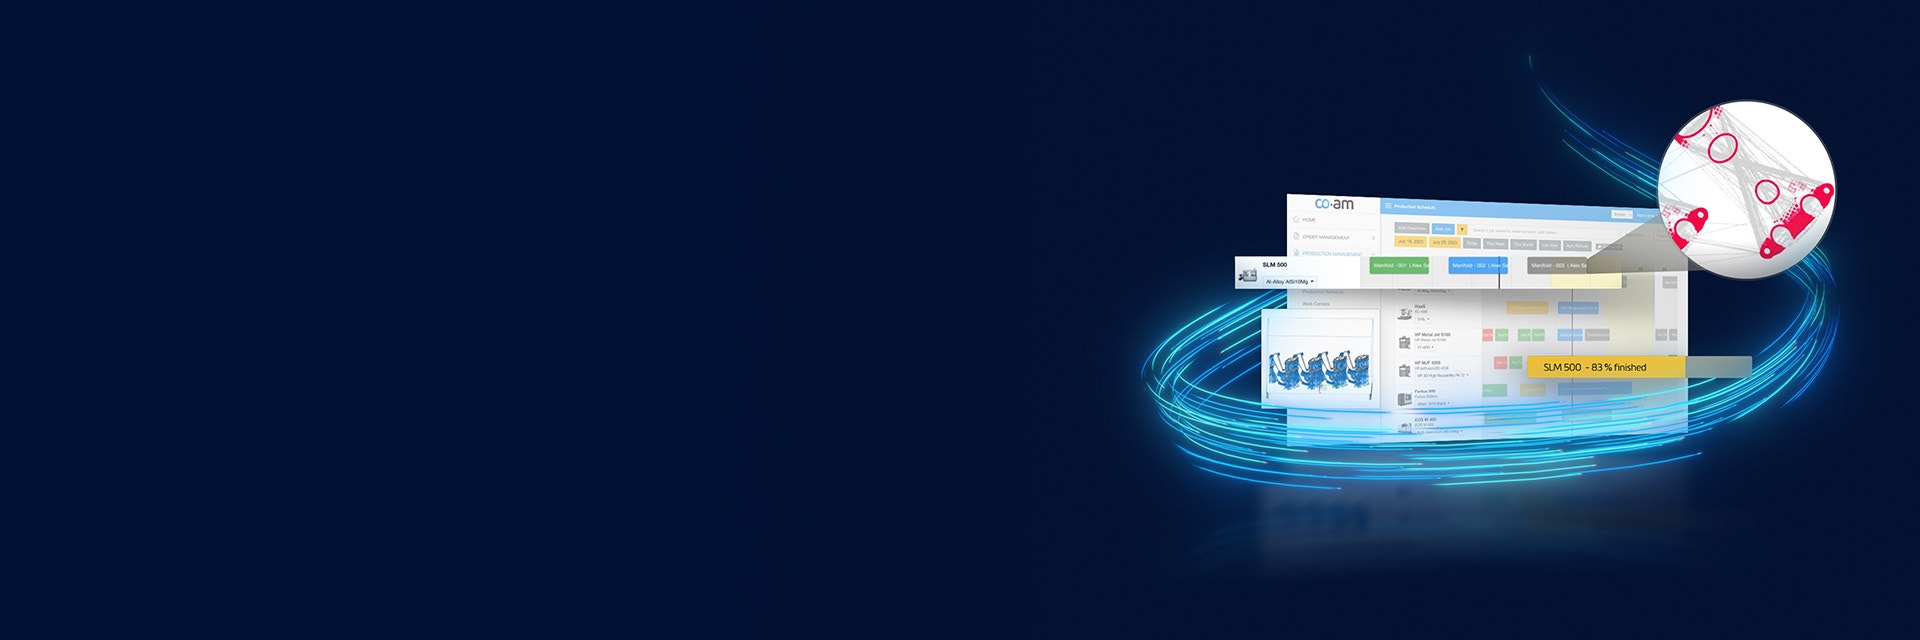 Schermata che mostra il software CO-AM con i diversi campi che spuntano e le linee blu neon che girano intorno